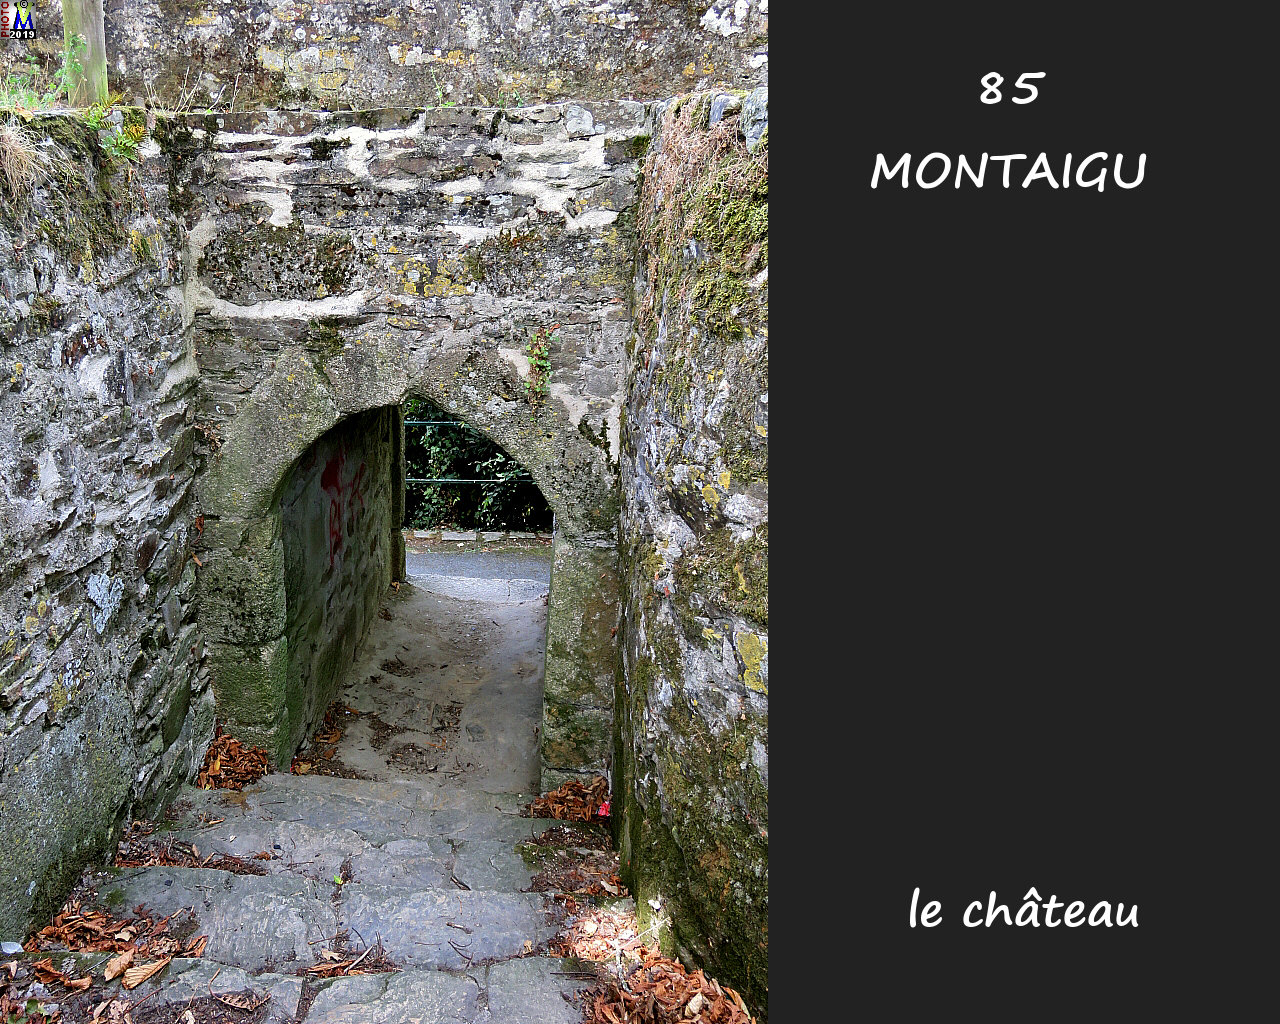 85MONTAIGU_chateau_1062.jpg